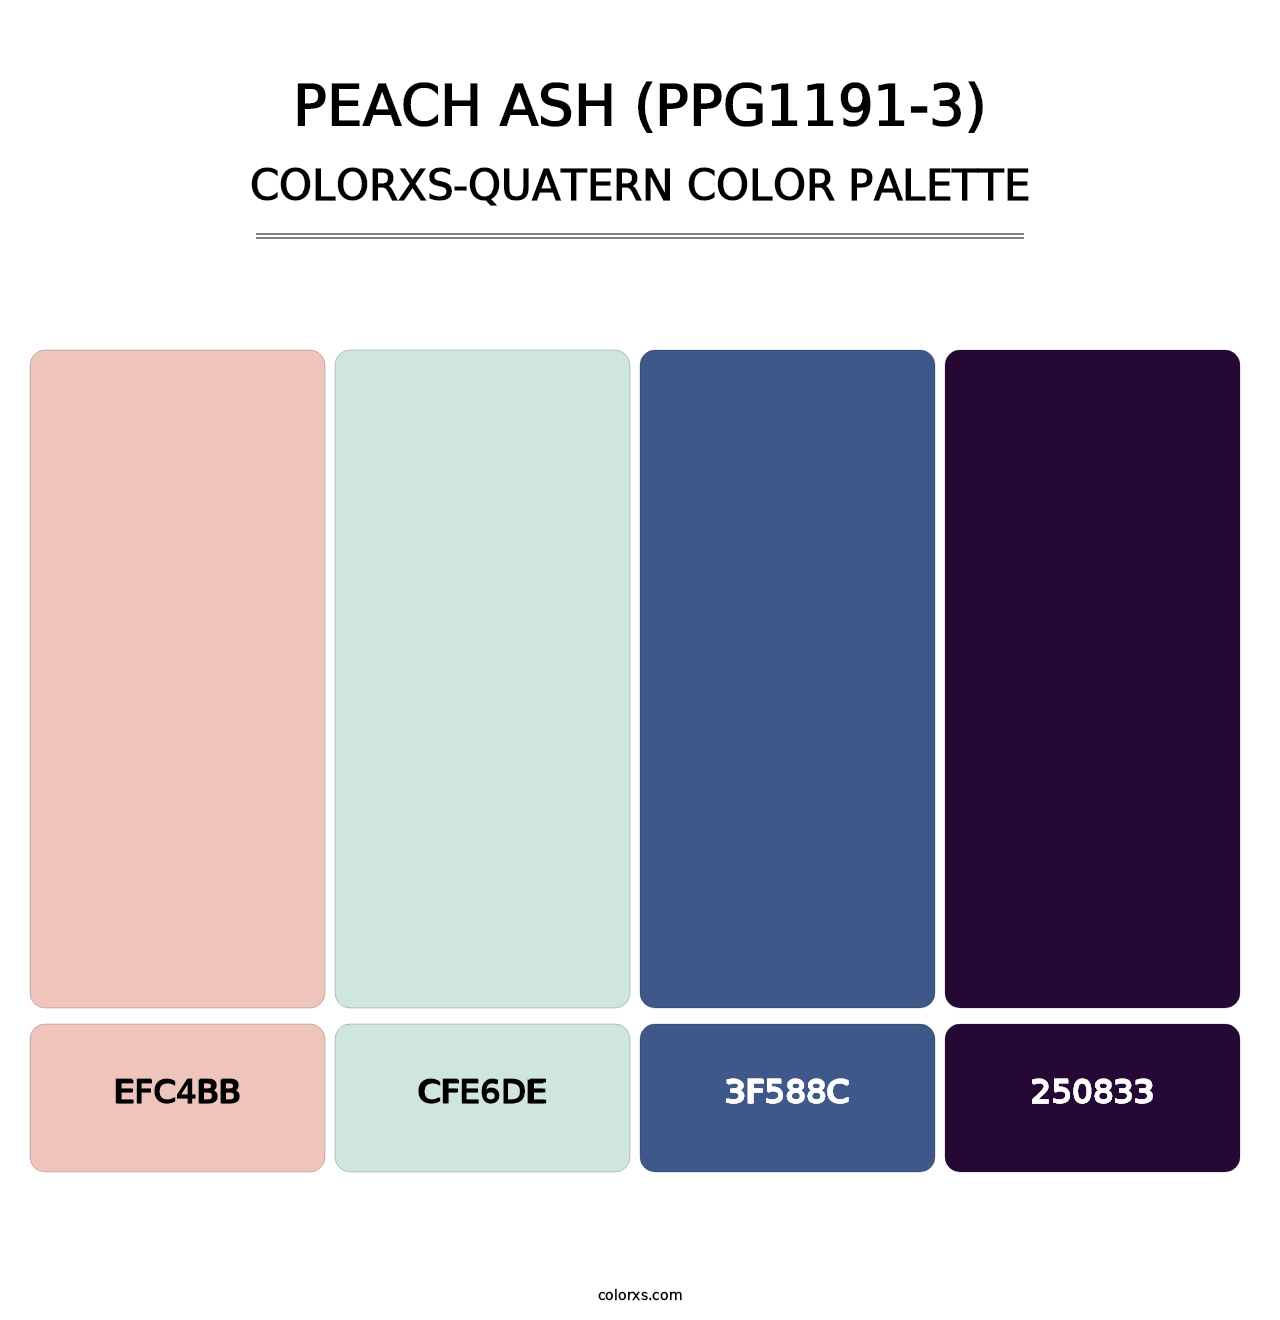 Peach Ash (PPG1191-3) - Colorxs Quatern Palette